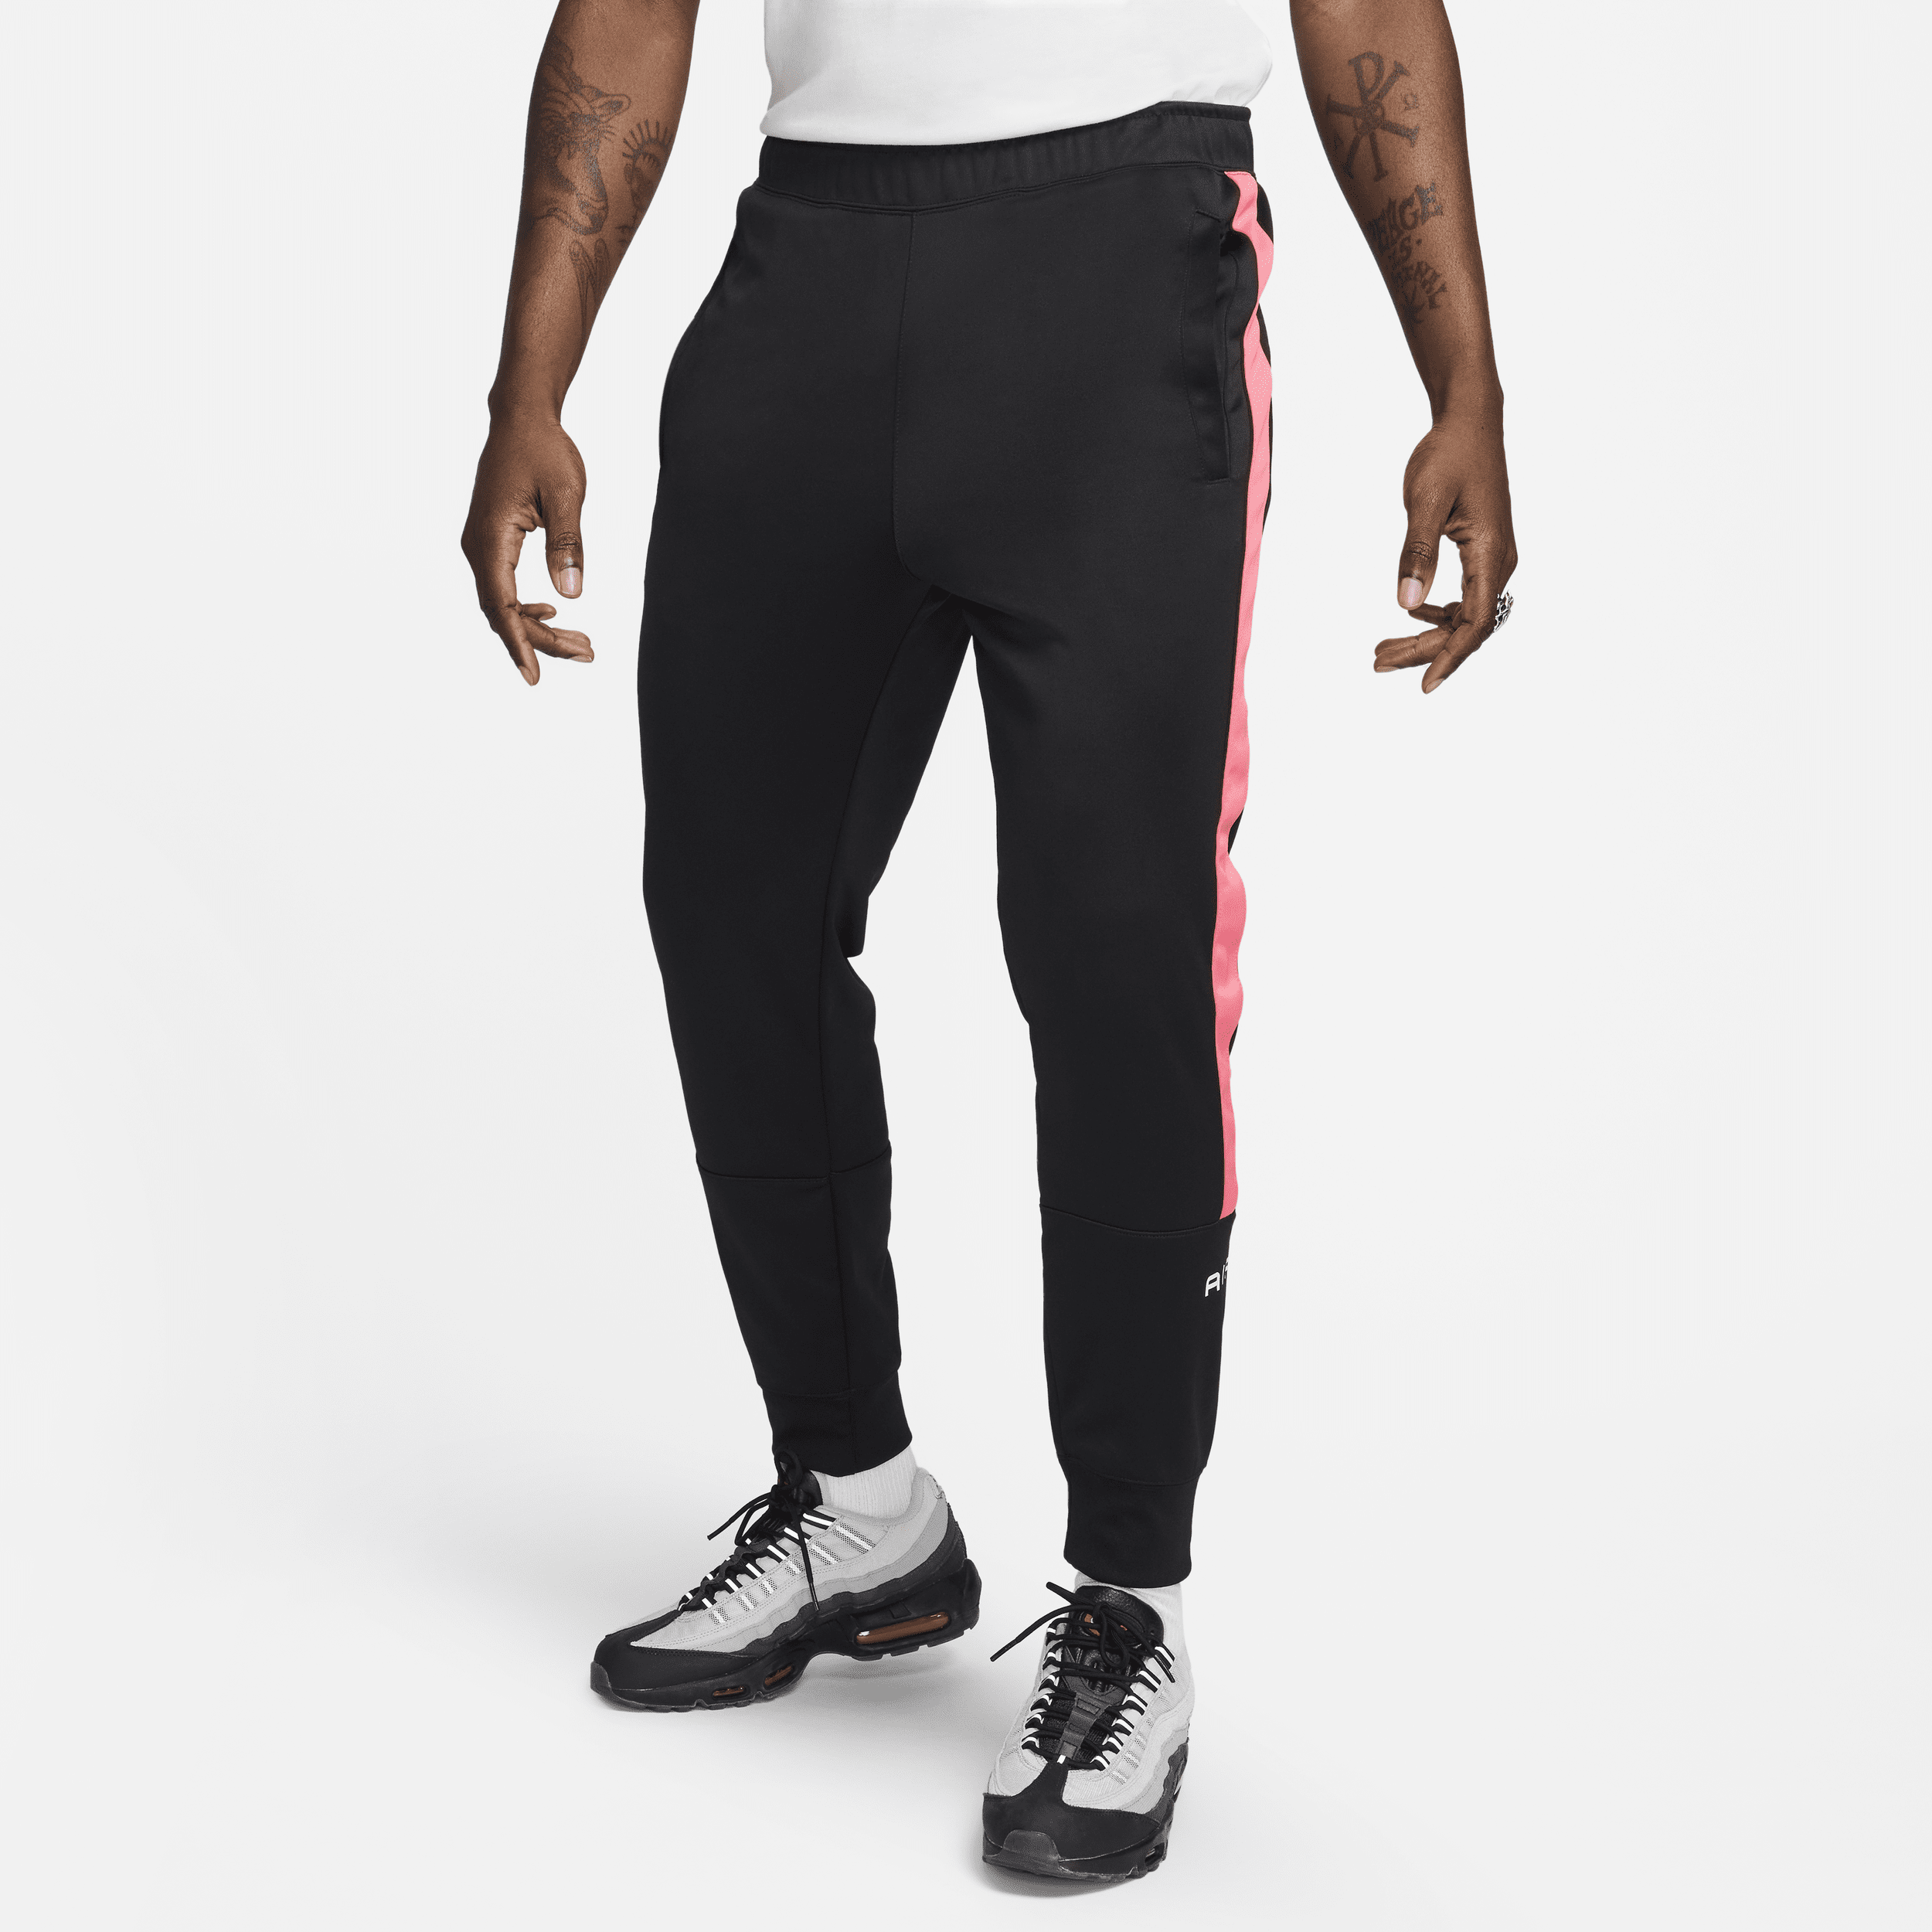 Nike Air joggingbroek voor heren Zwart